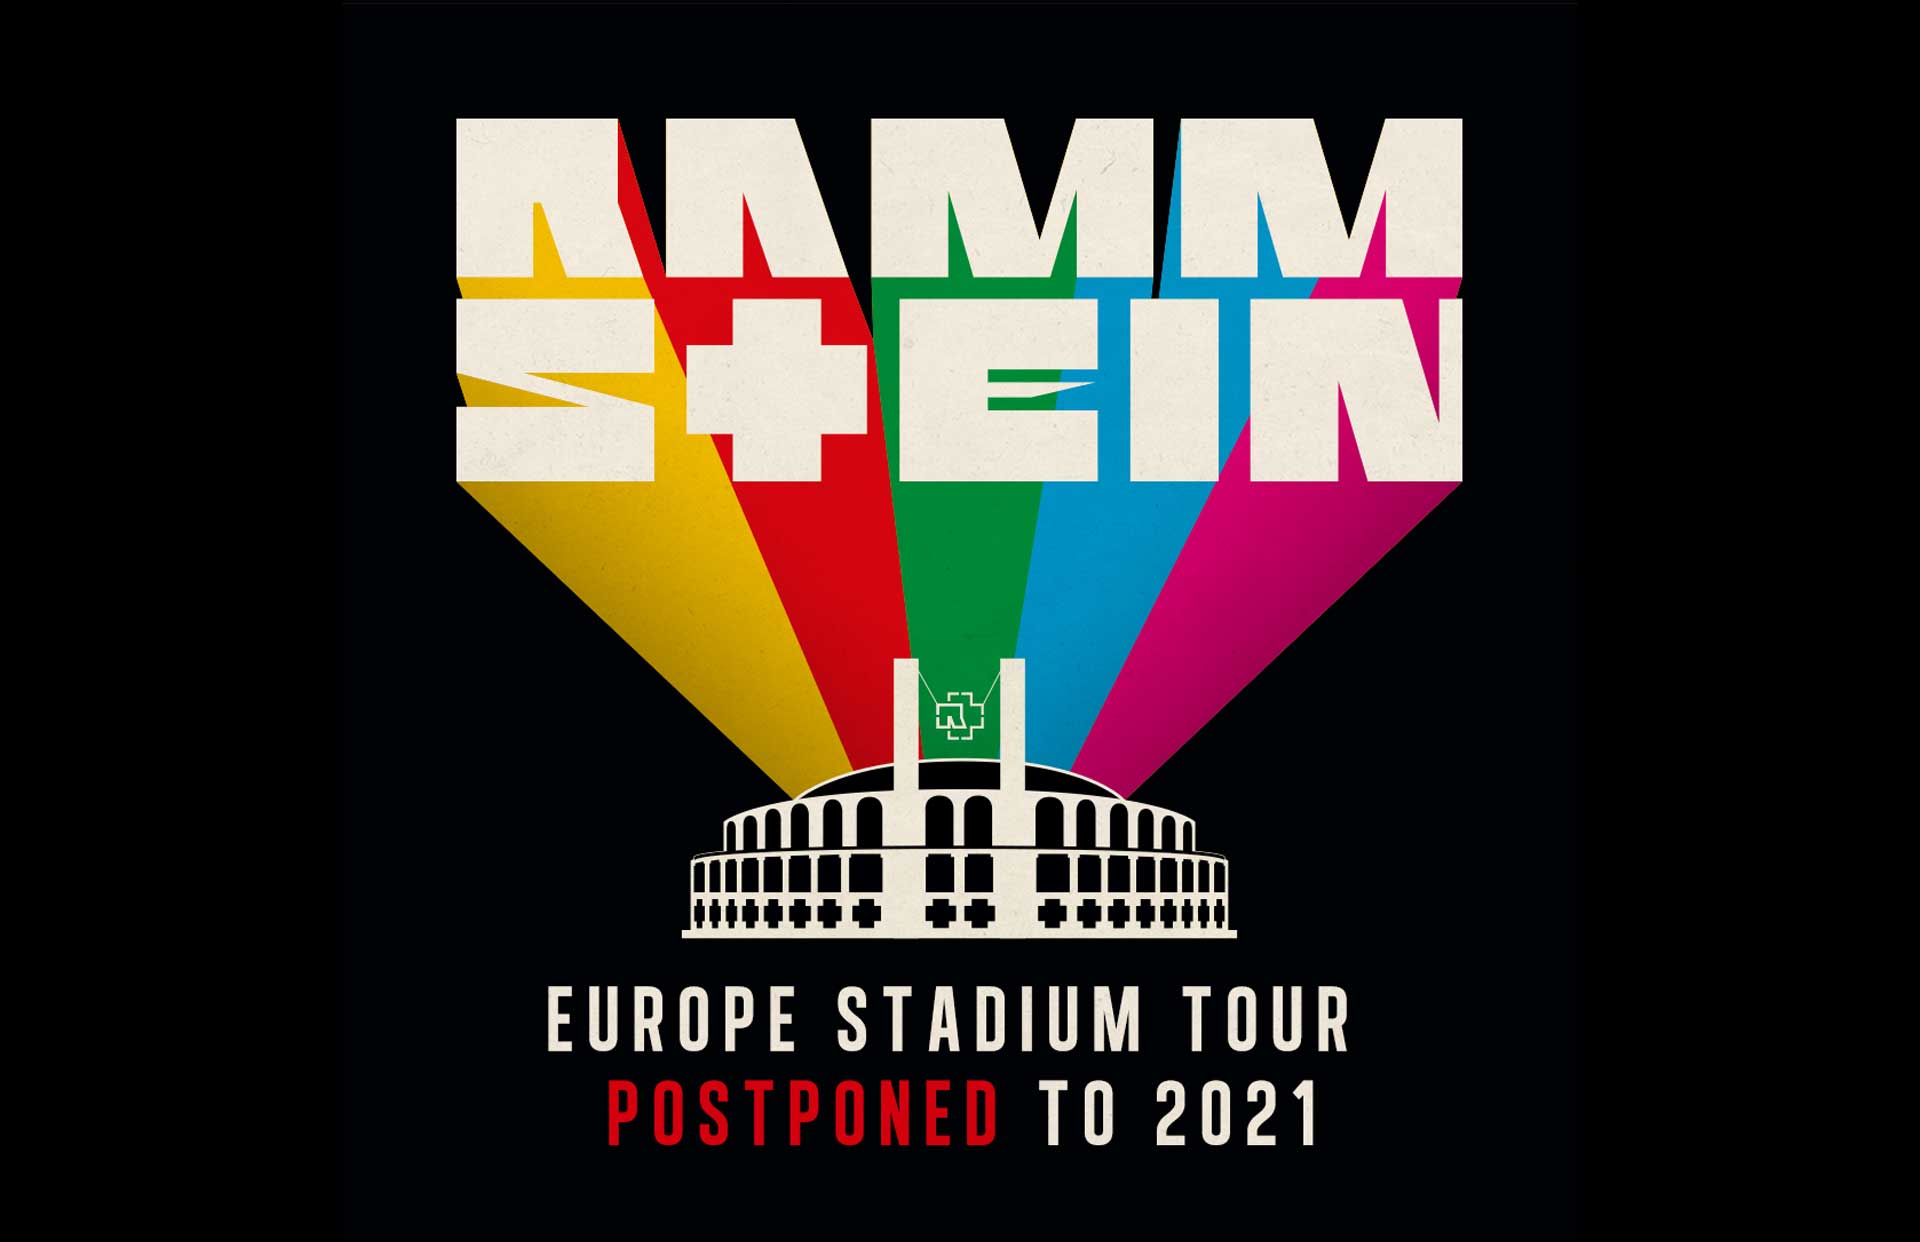 Rammstein Europe Stadium Tour 2021